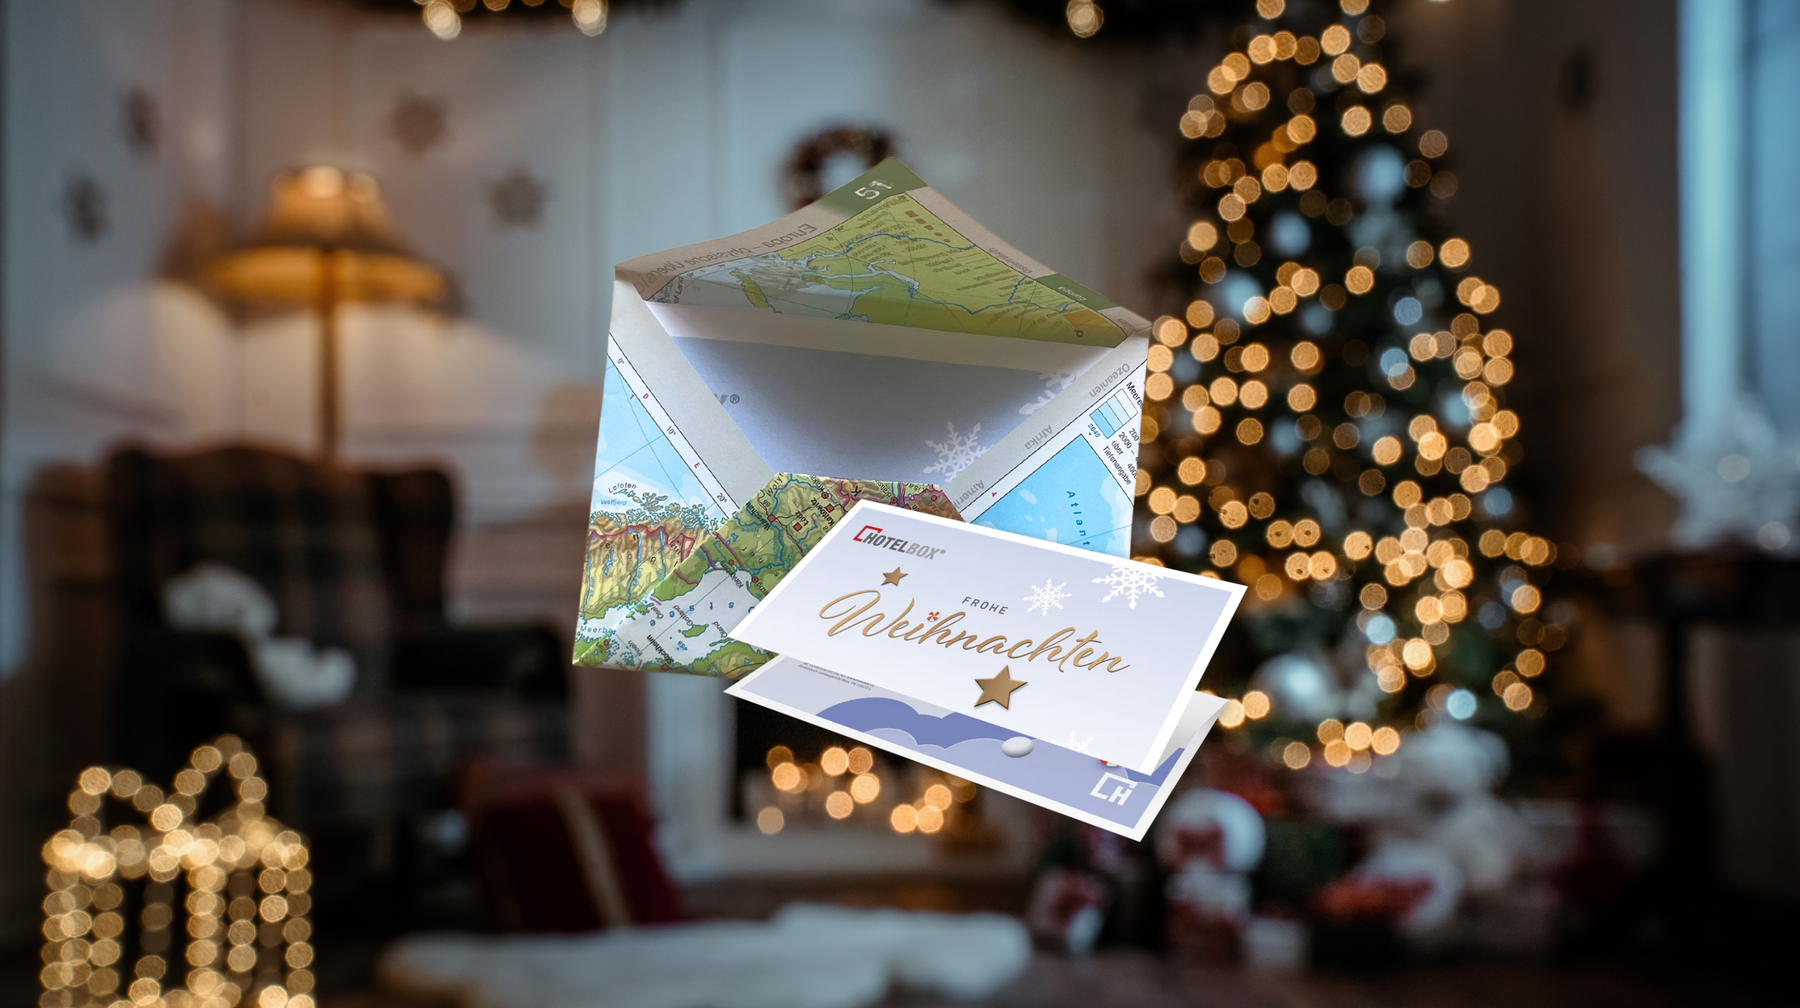 Last Minute Geschenke persönlich verpacken: Briefumschlag aus Atlasseite